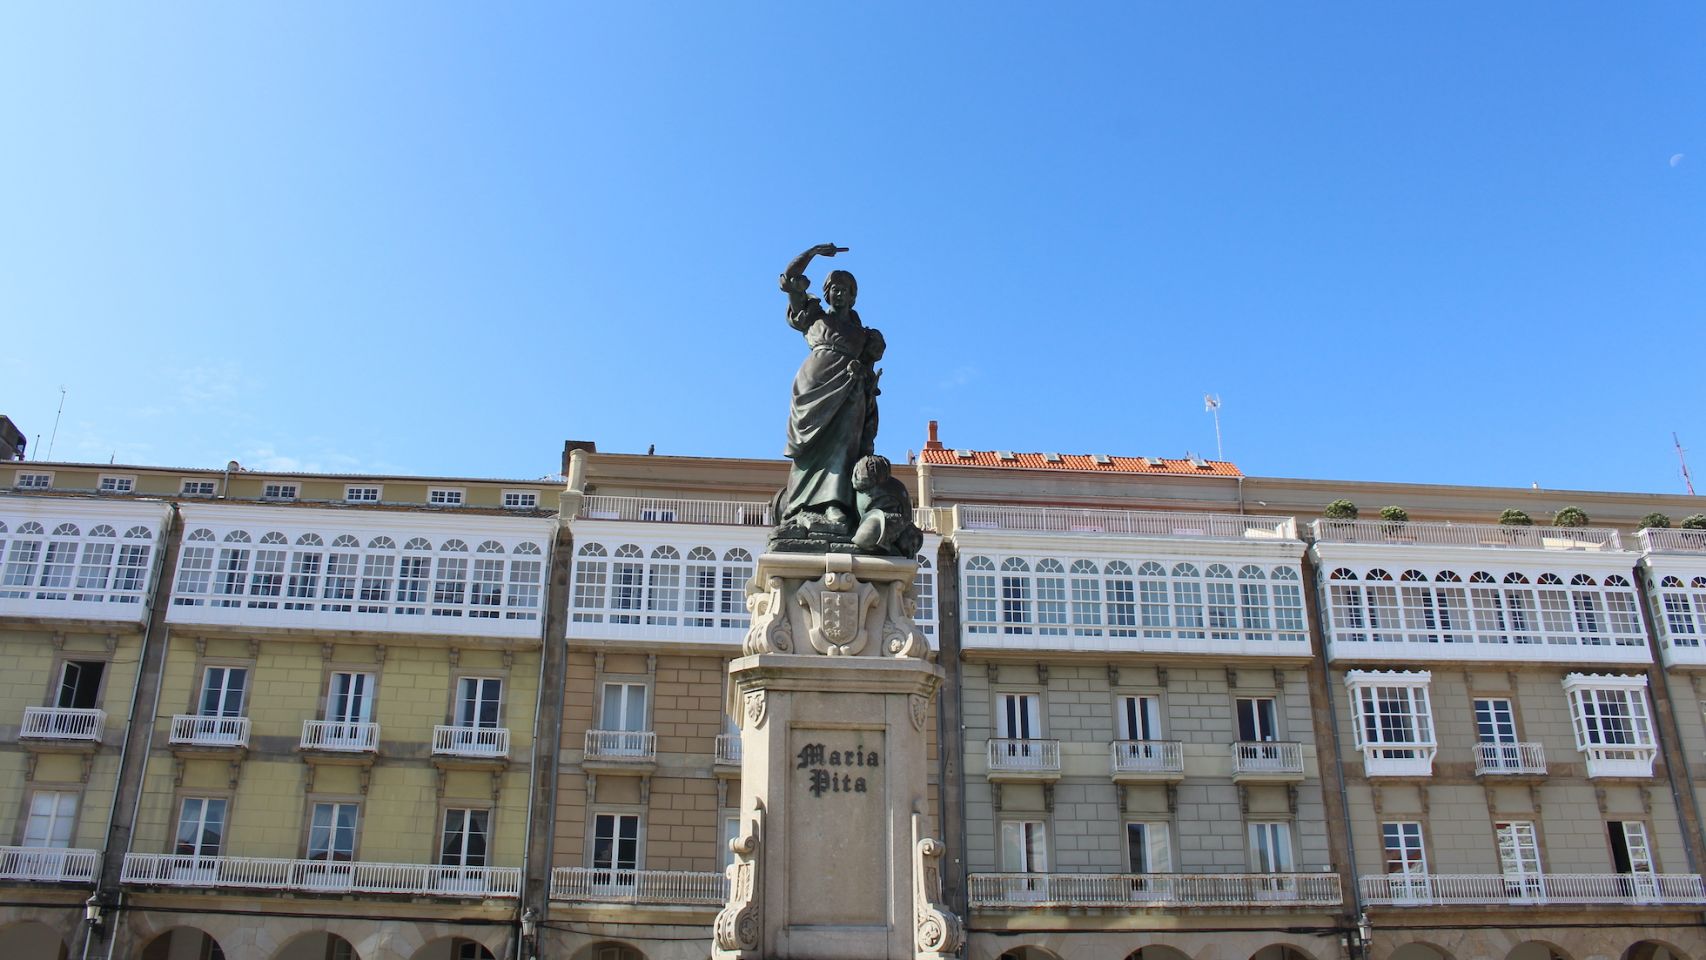 Estatua de María Pita situada en la Plaza de María Pita, en frente al Ayuntamiento de la ciudad.